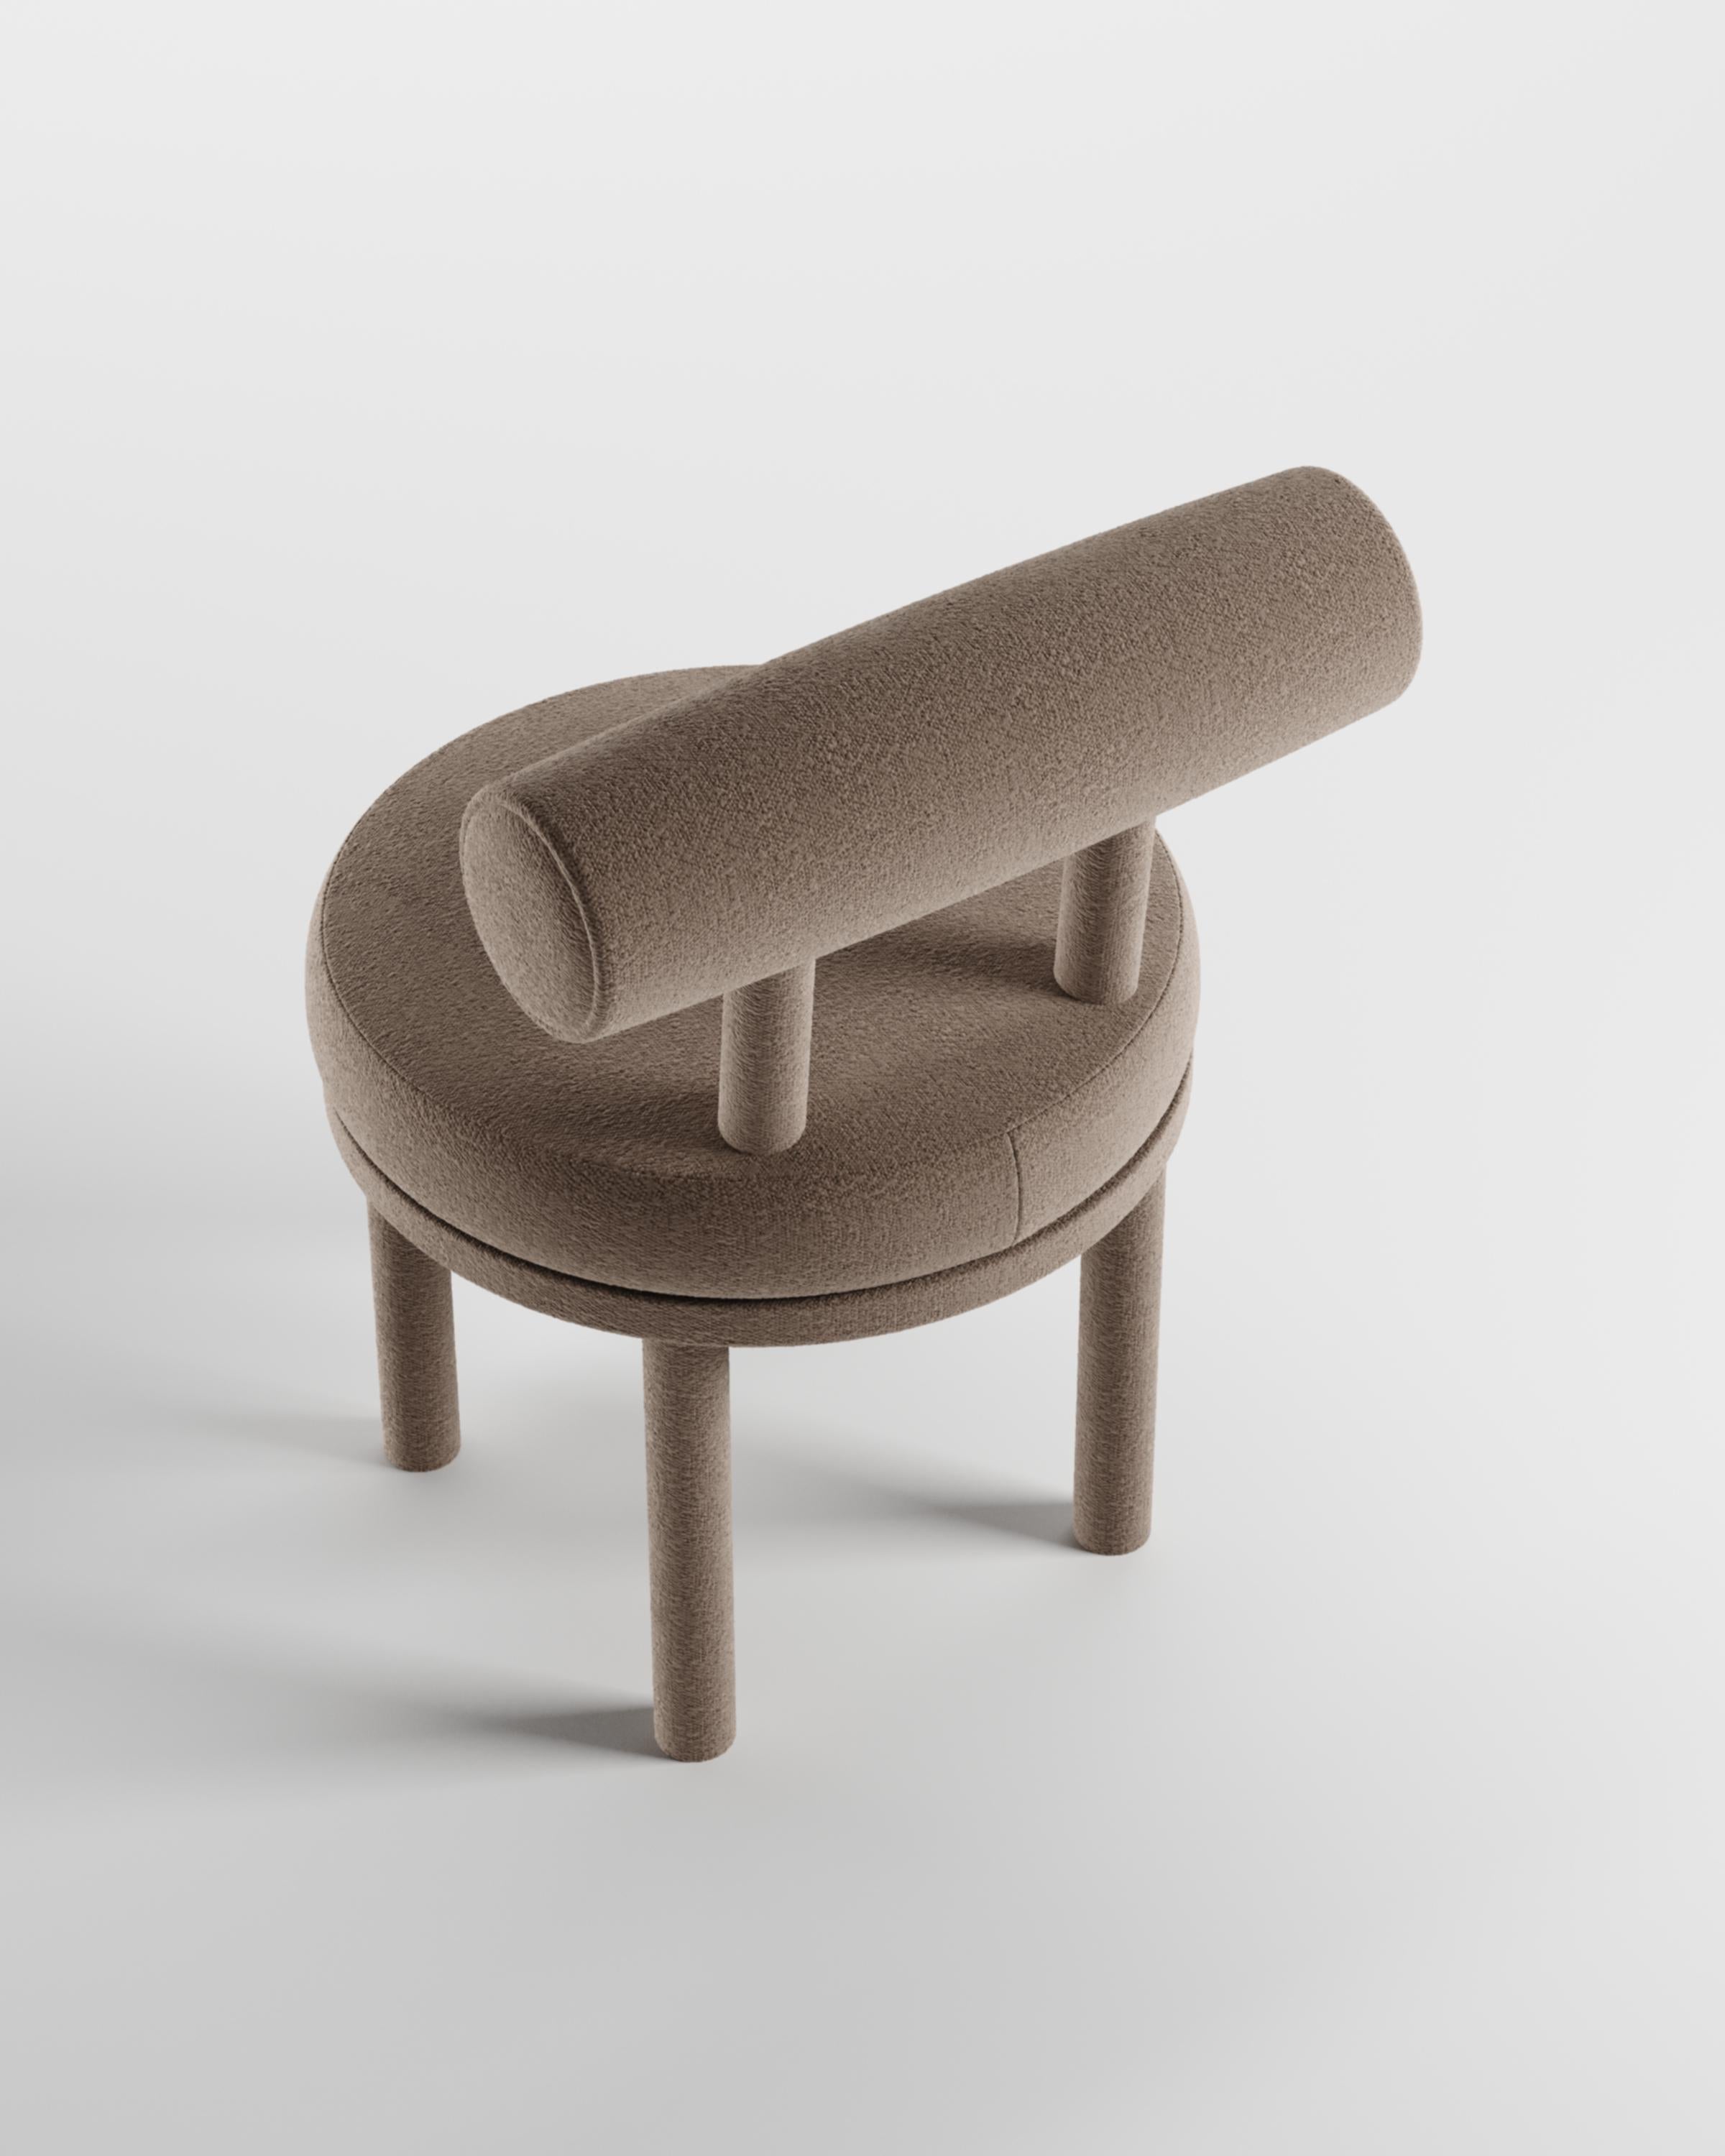 Une chaise qui allie les approches modernes et classiques du design.
Conçue pour épouser le corps, cette chaise durable et solide présente une structure de corps produite en bois massif.

Structure en bois de chêne massif et revêtement en tissu